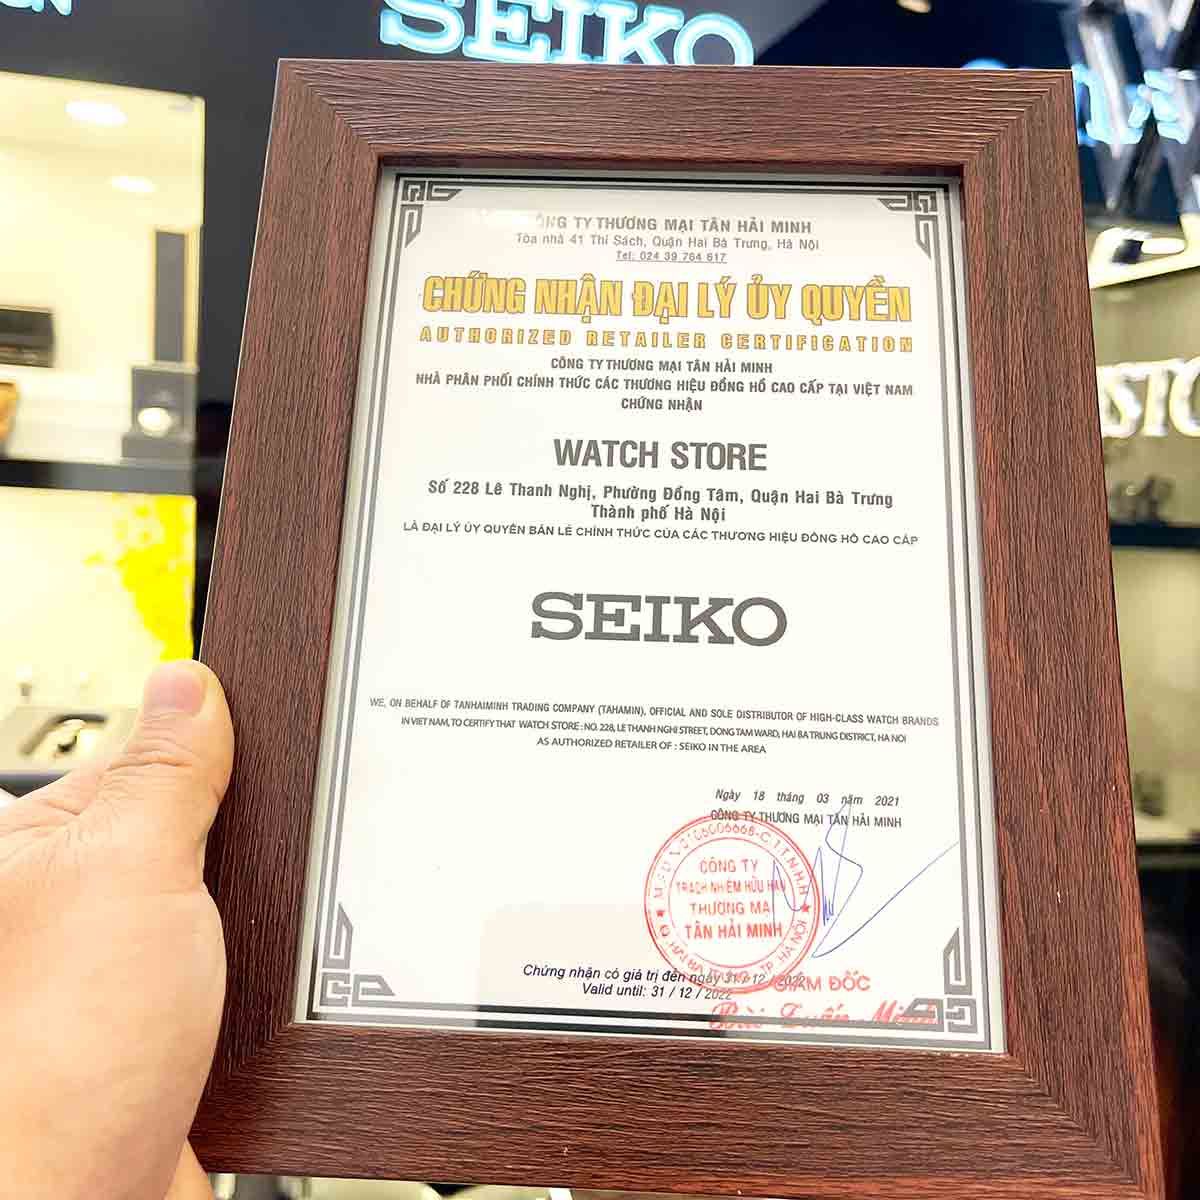 Seiko 4r36 - Mẫu đồng hồ cơ được ưa chuộng nhất trên thị trường - Ảnh 7